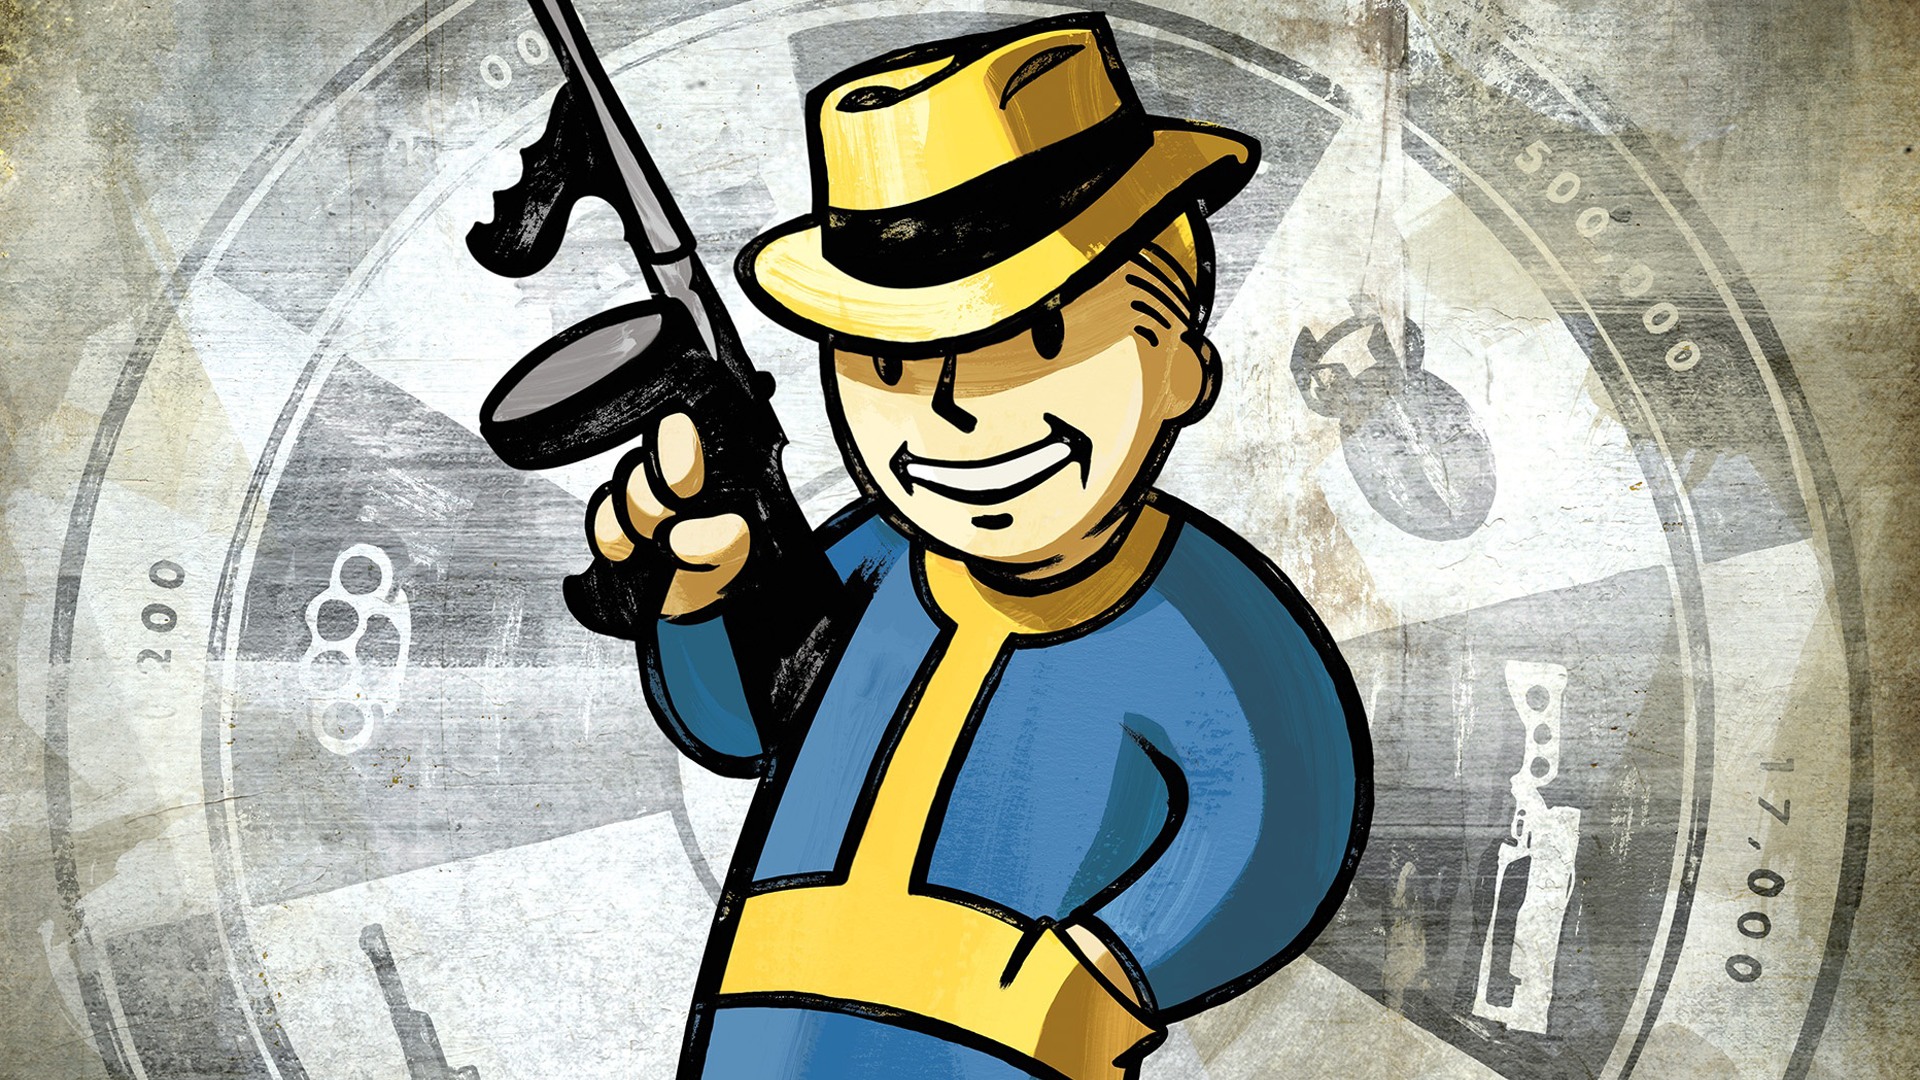 Fallout 4 - Pip-boy